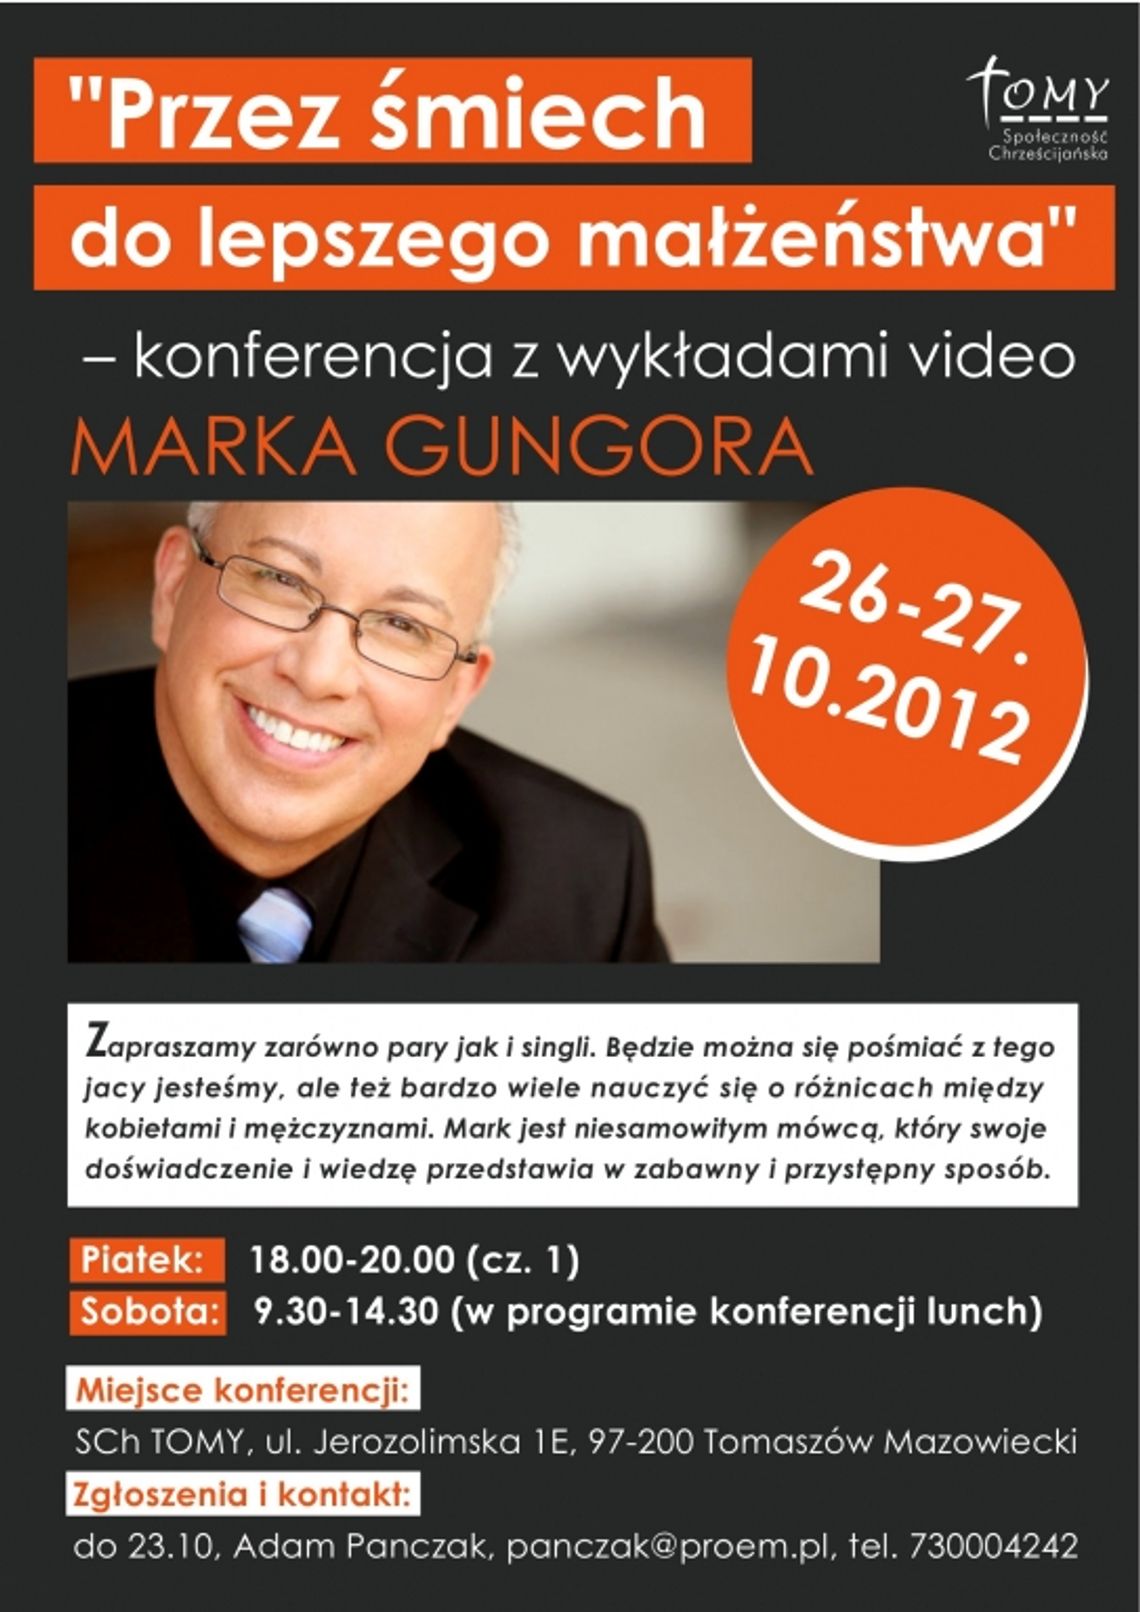 Przez śmiech do lepszego małżeństwa - konferencja z wykładami video Marka Gungora